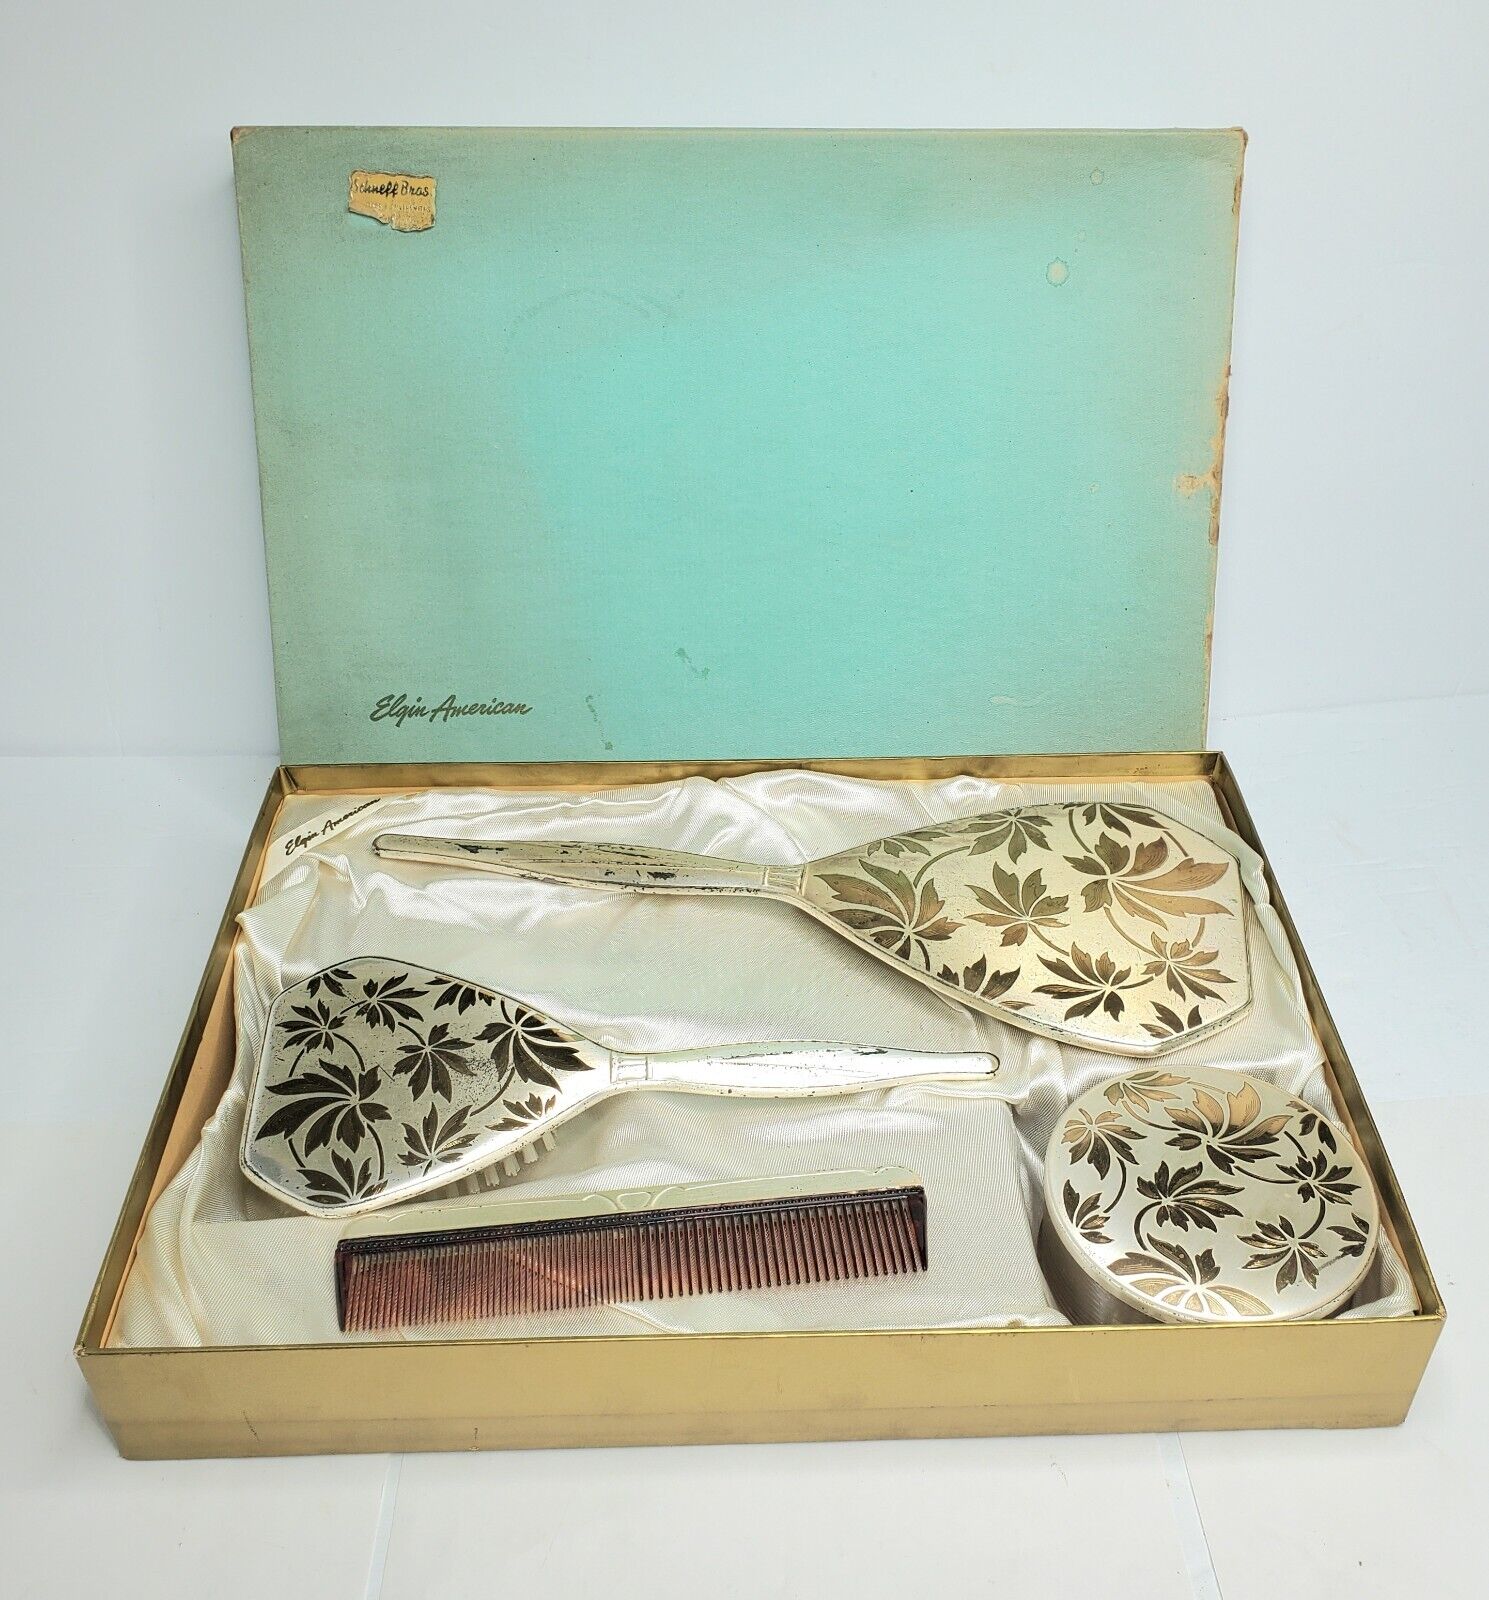 Vintage Elgin American Dressing Table Vanity Set - Mirror, Comb, Brush, Makeup 